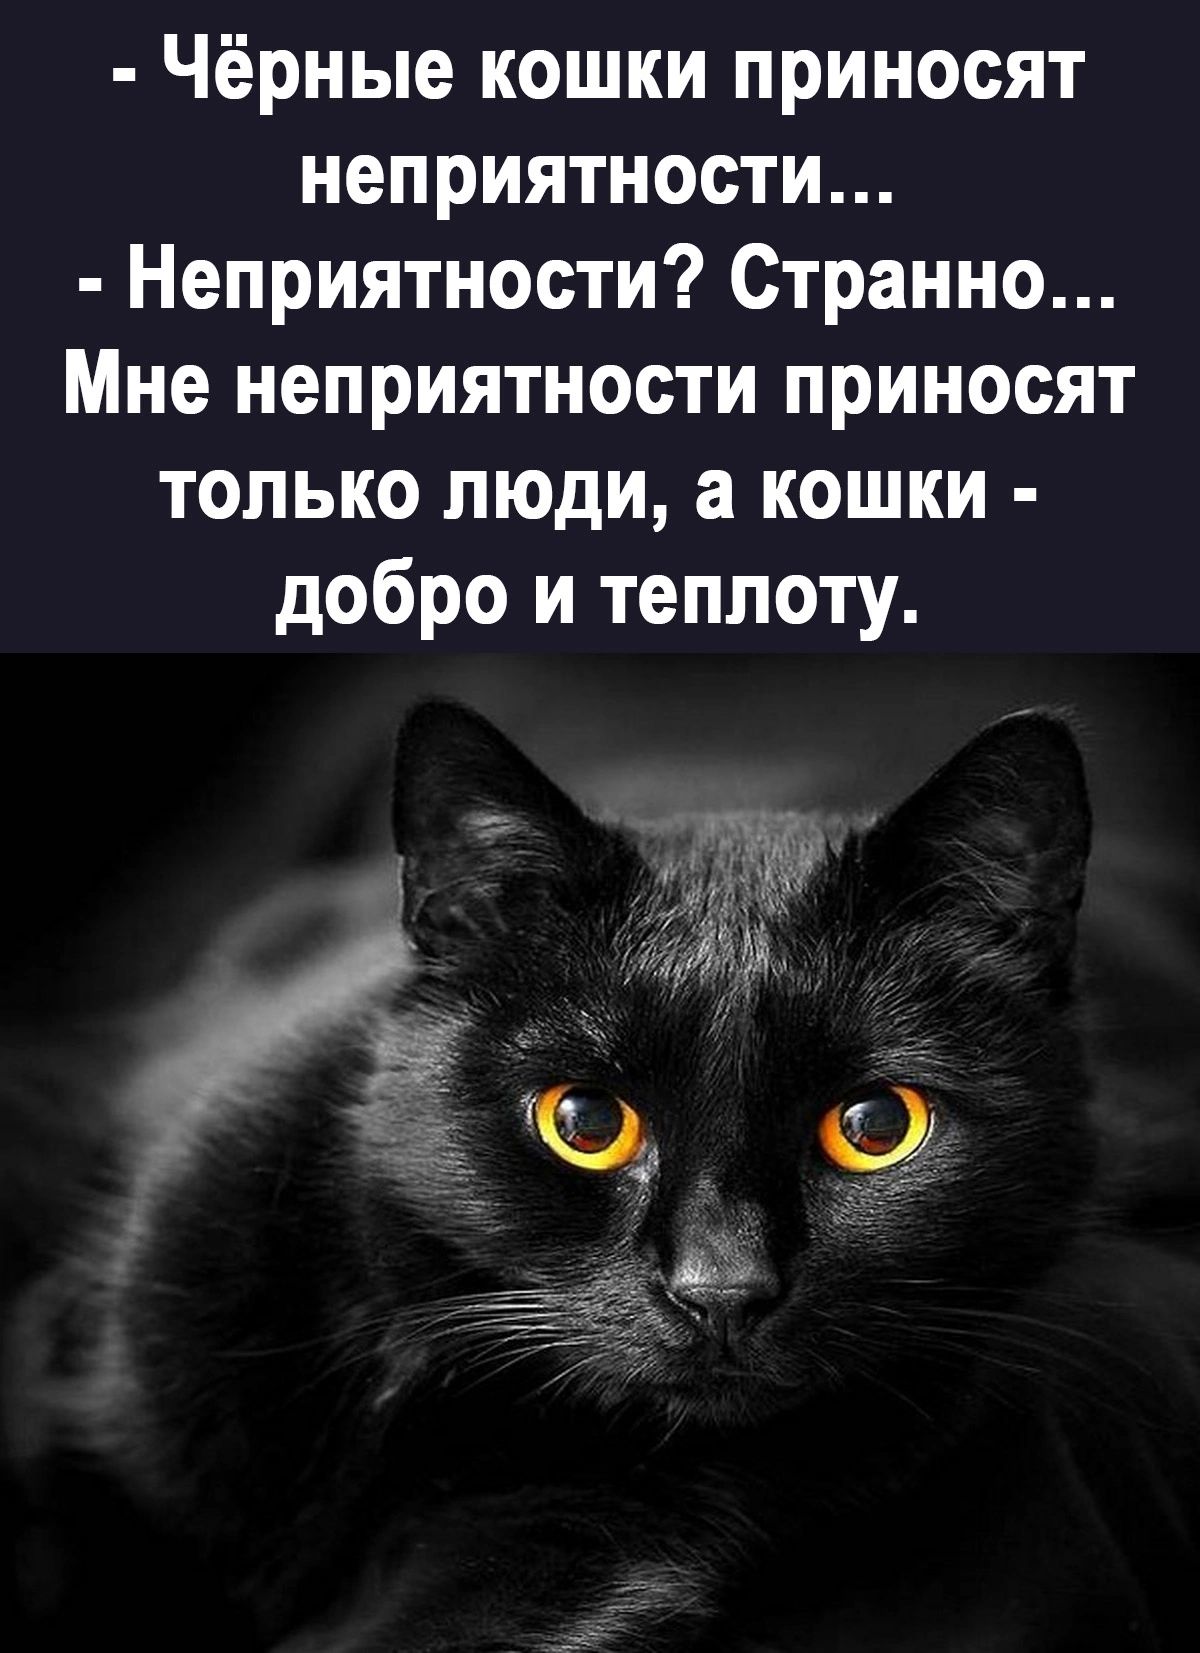 Чёрные кошки приносят неприятности Неприятности Странно Мне неприятности приносят только люди а кошки добро и теплоту